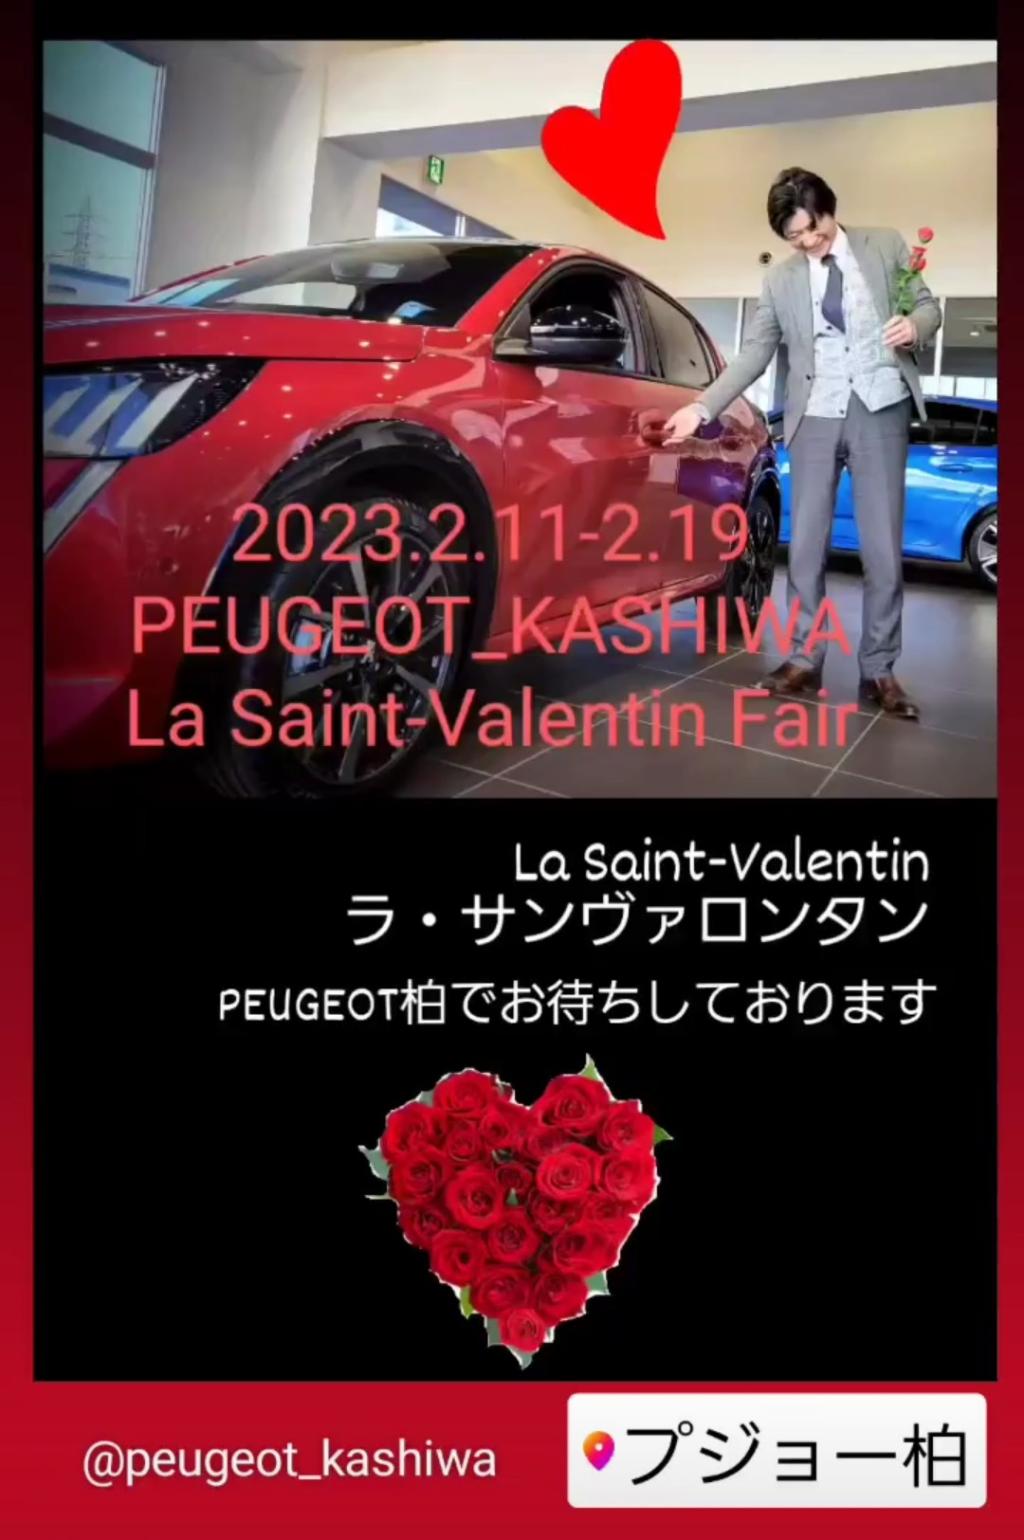 プジョー柏の「La Saint-Valentin Fair」2月11日(土)より♡